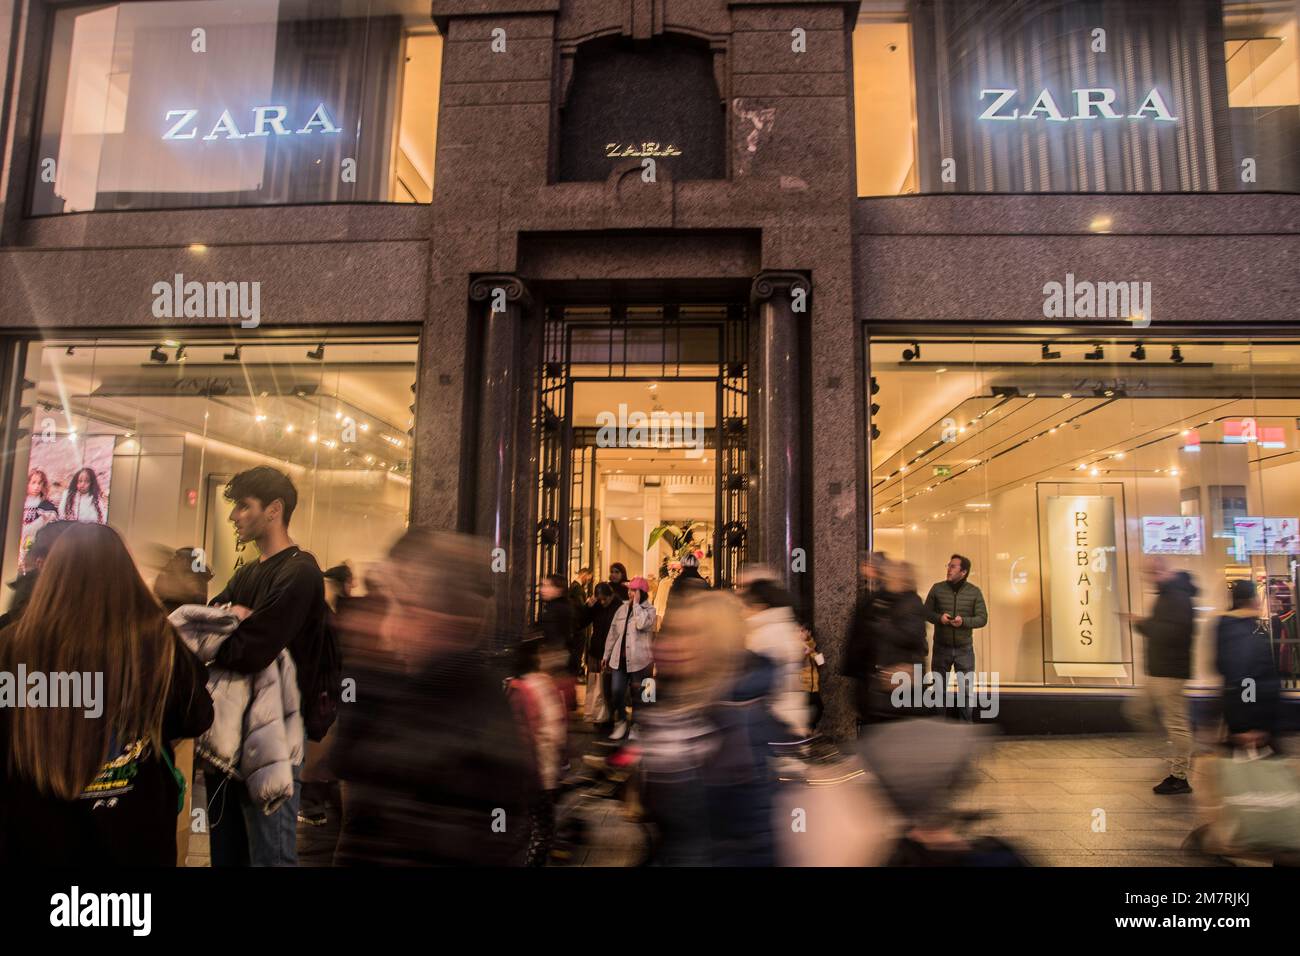 Zara, le magasin Inditex par excellence, fait constamment les gros titres.  Il y a tout juste un mois, elle a ouvert son magasin phare au milieu de la  Calle Juan de Austria,